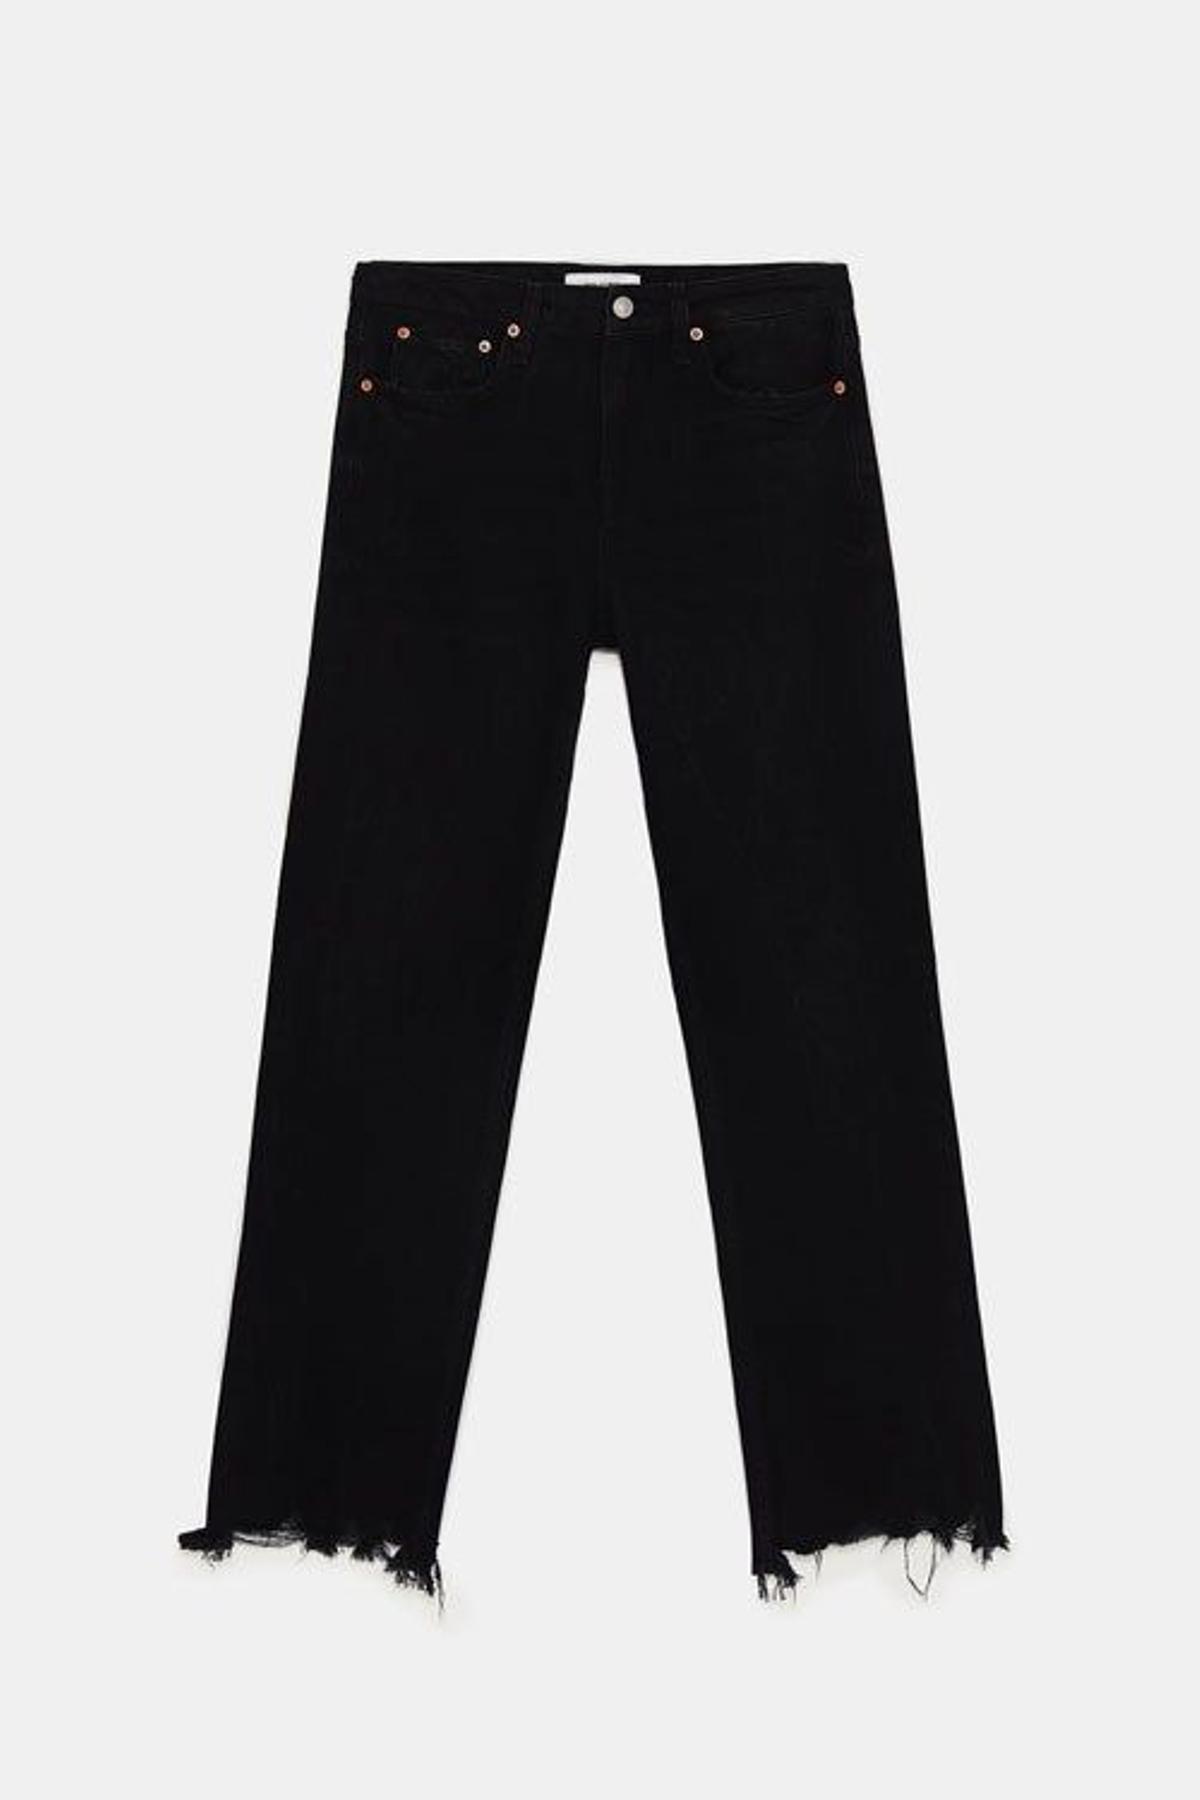 Pantalón negro deshilachado de Zara